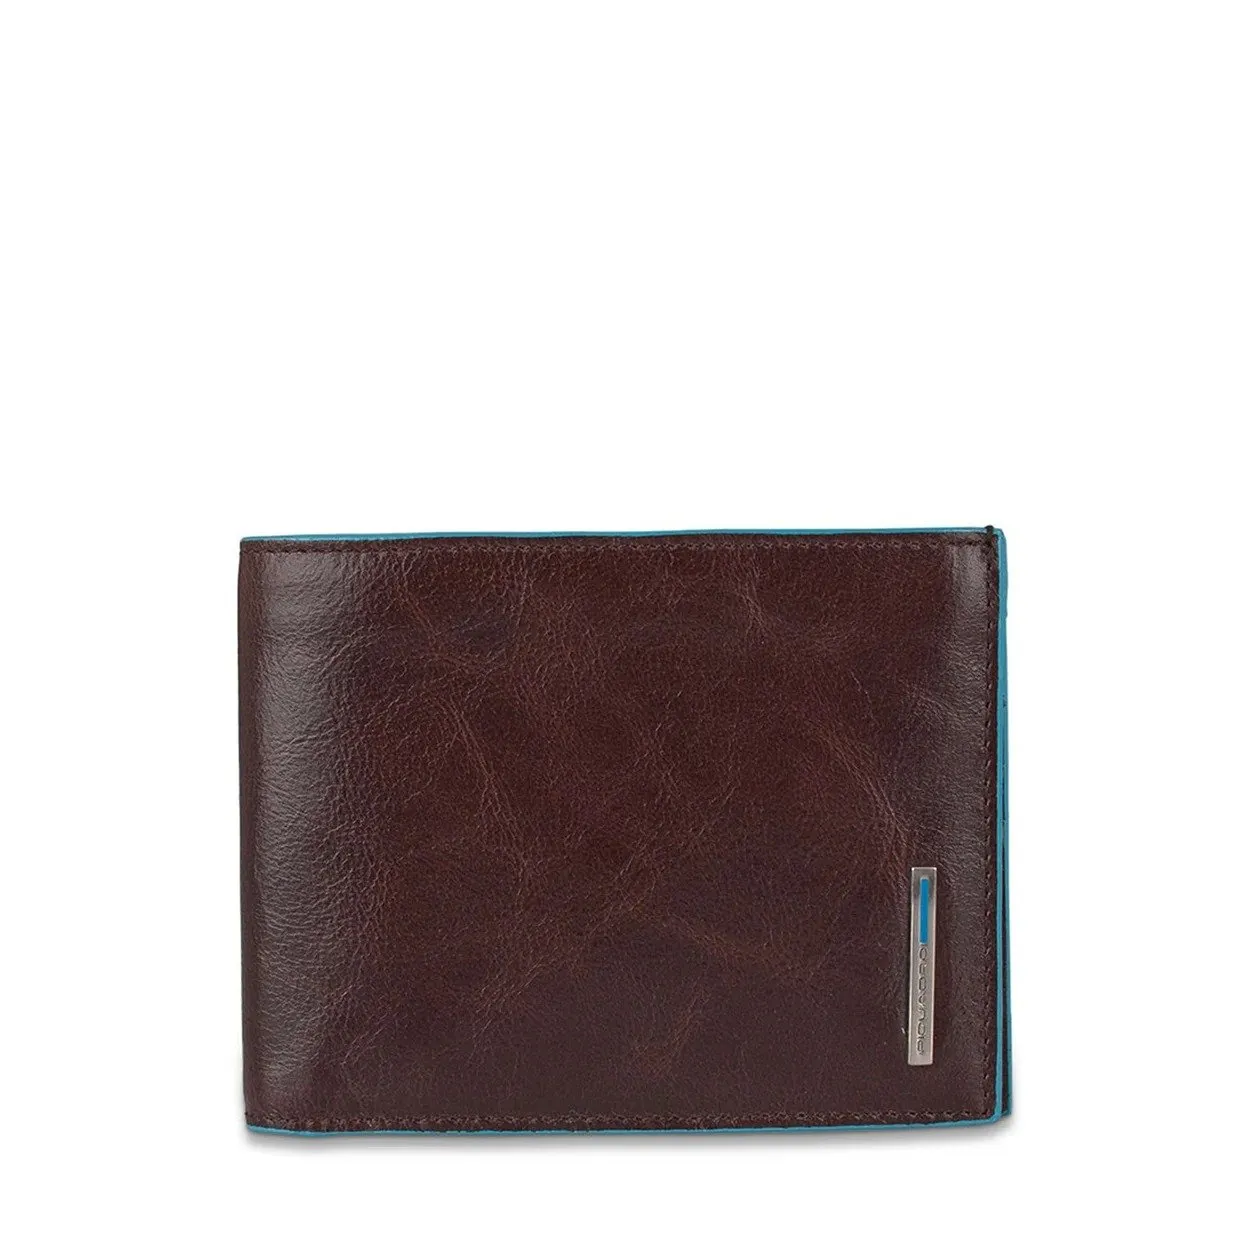 Piquadro portafoglio uomo con porta documenti marrone